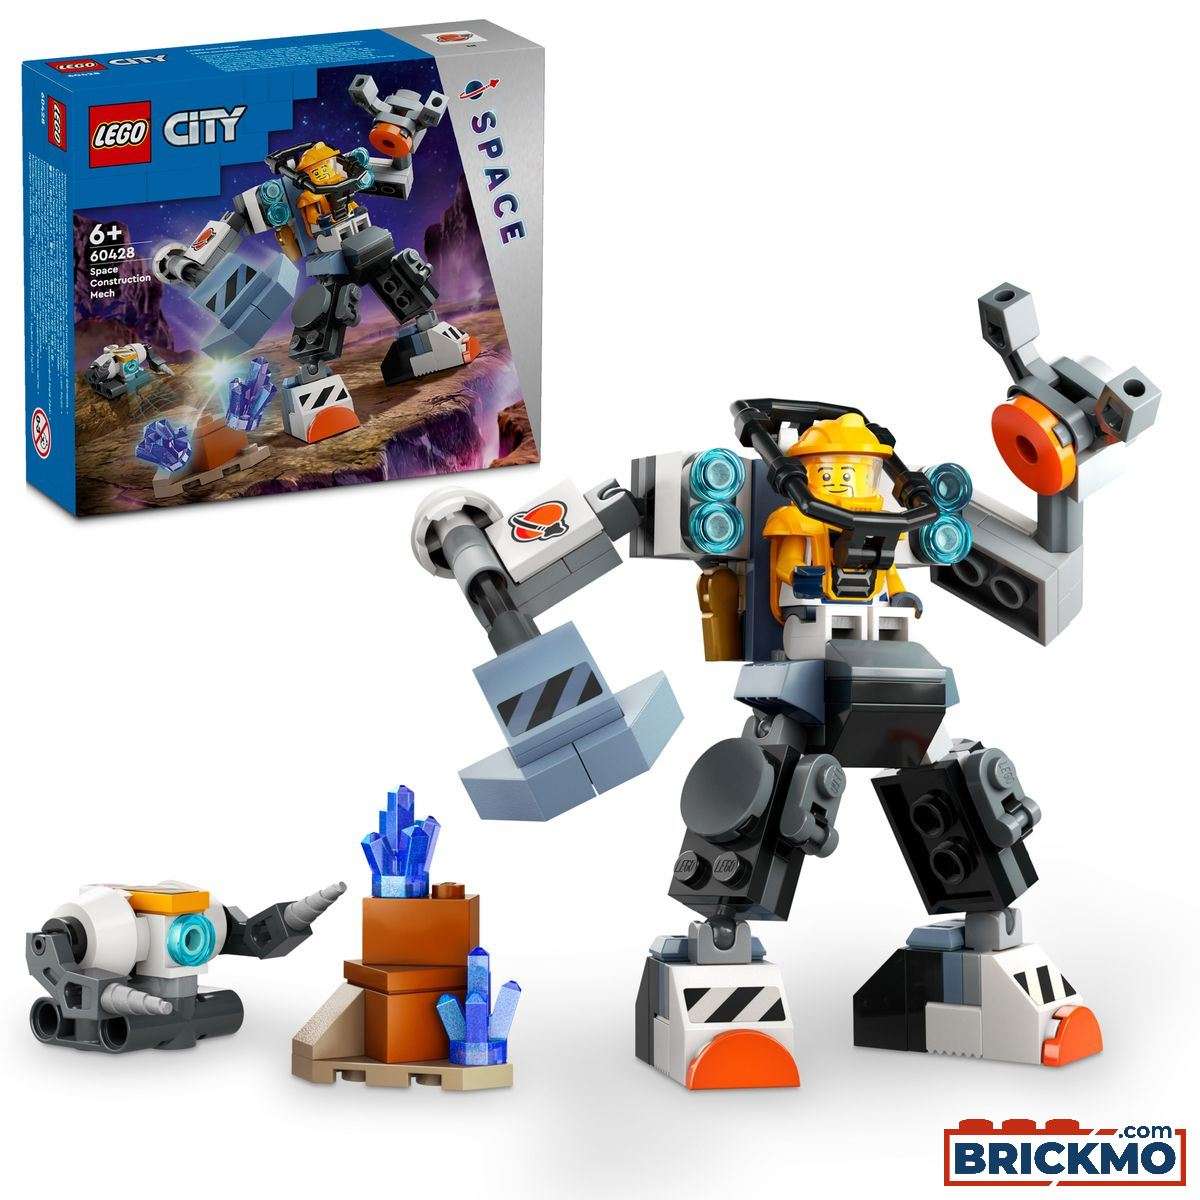 LEGO City 60428 Meca de Construcción Espacial 60428